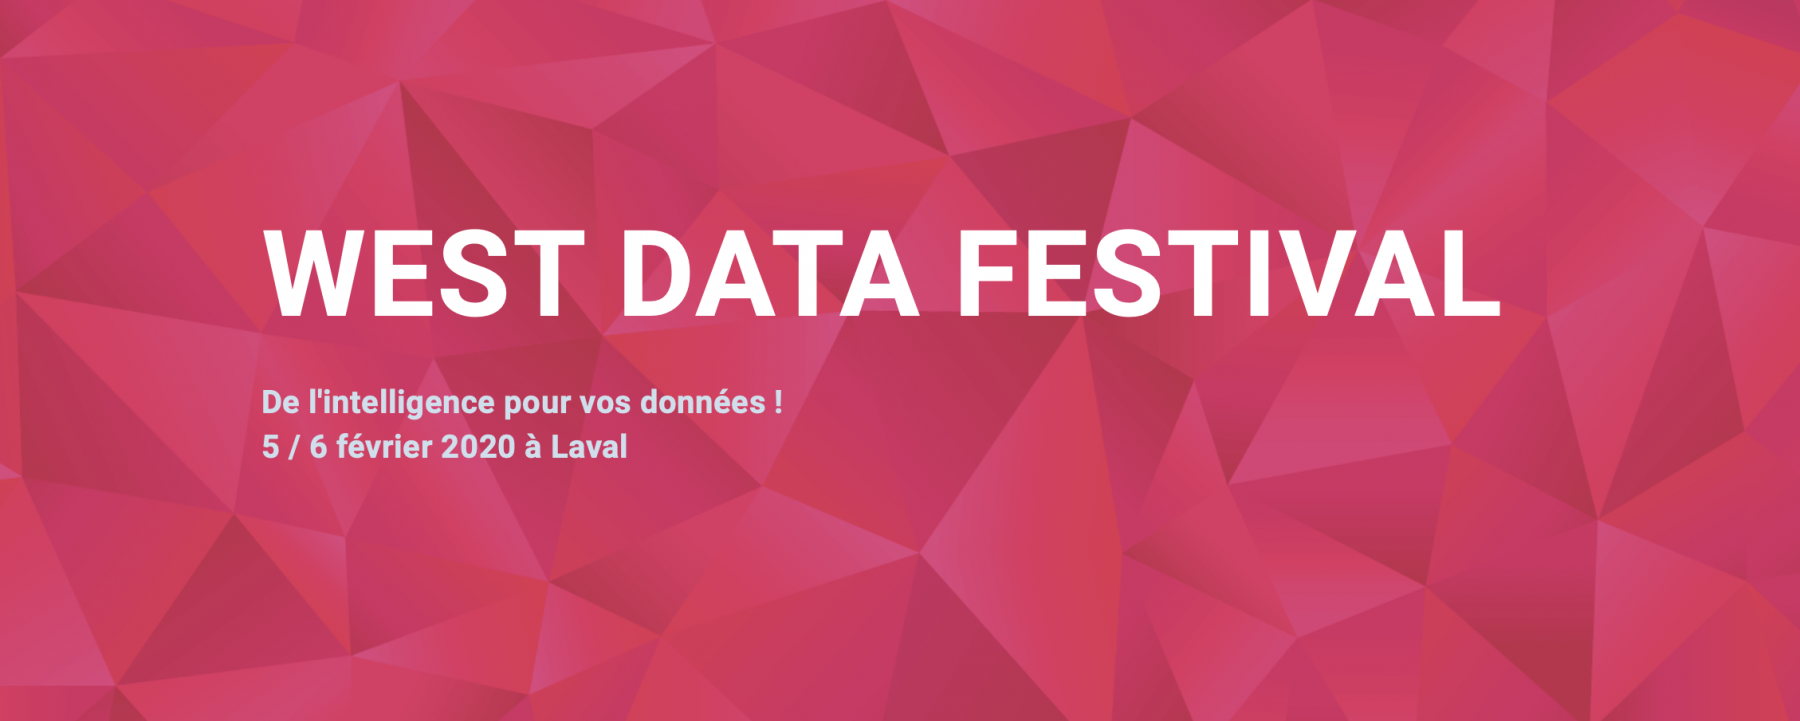 Bannière West Data Festival